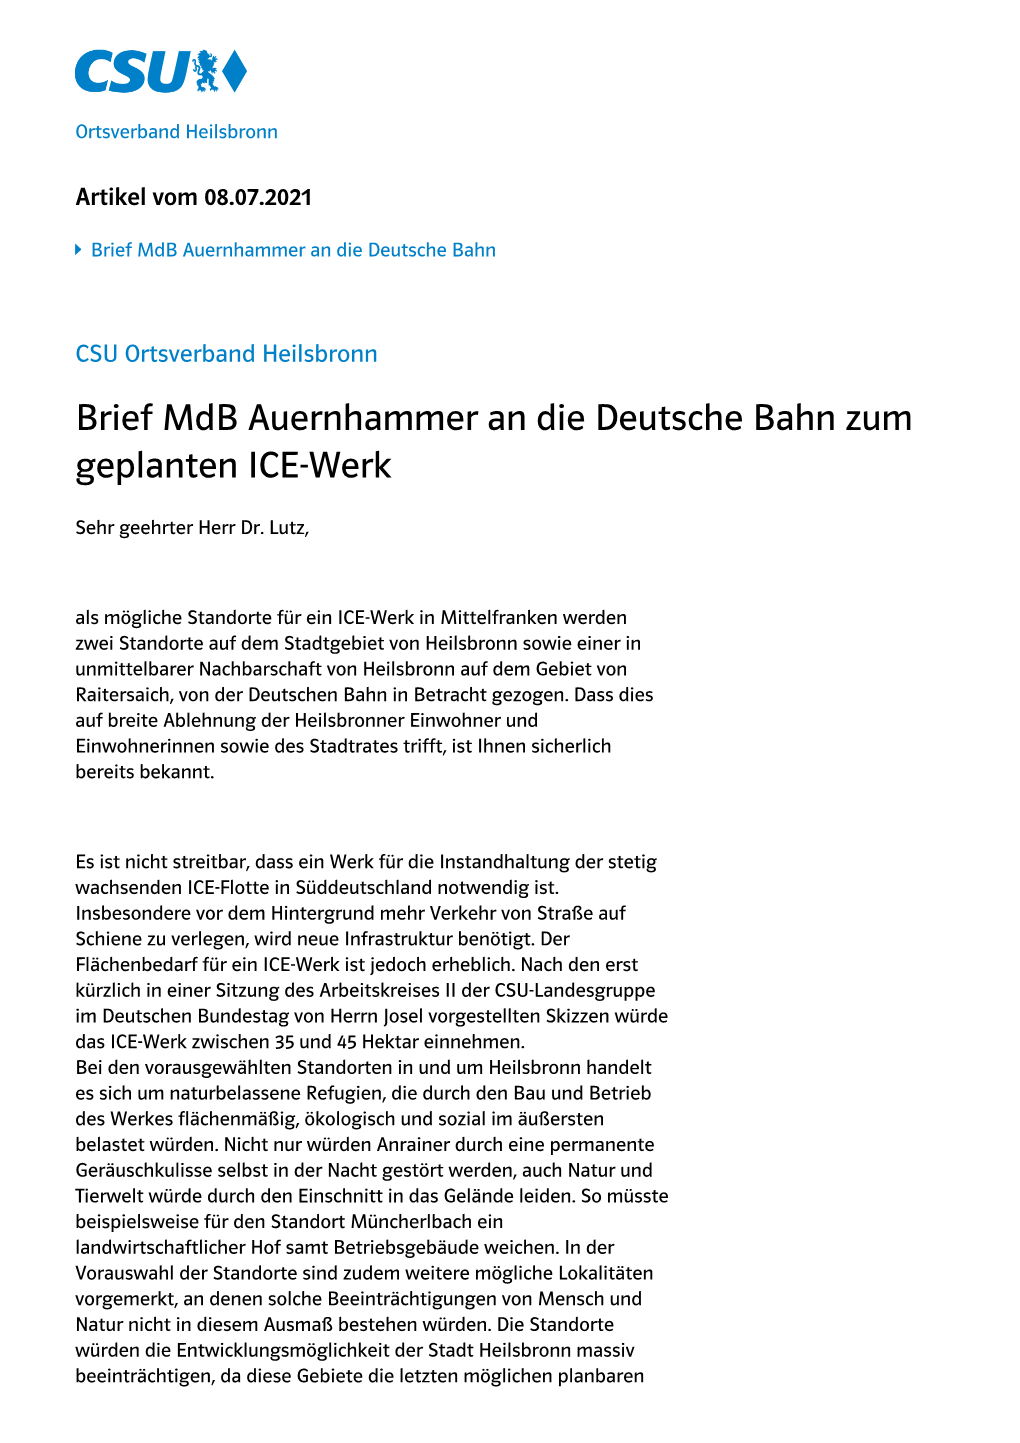 Brief Mdb Artur Auernhammer an Die Deutsche Bahn Zum Geplanten ICE-Werk